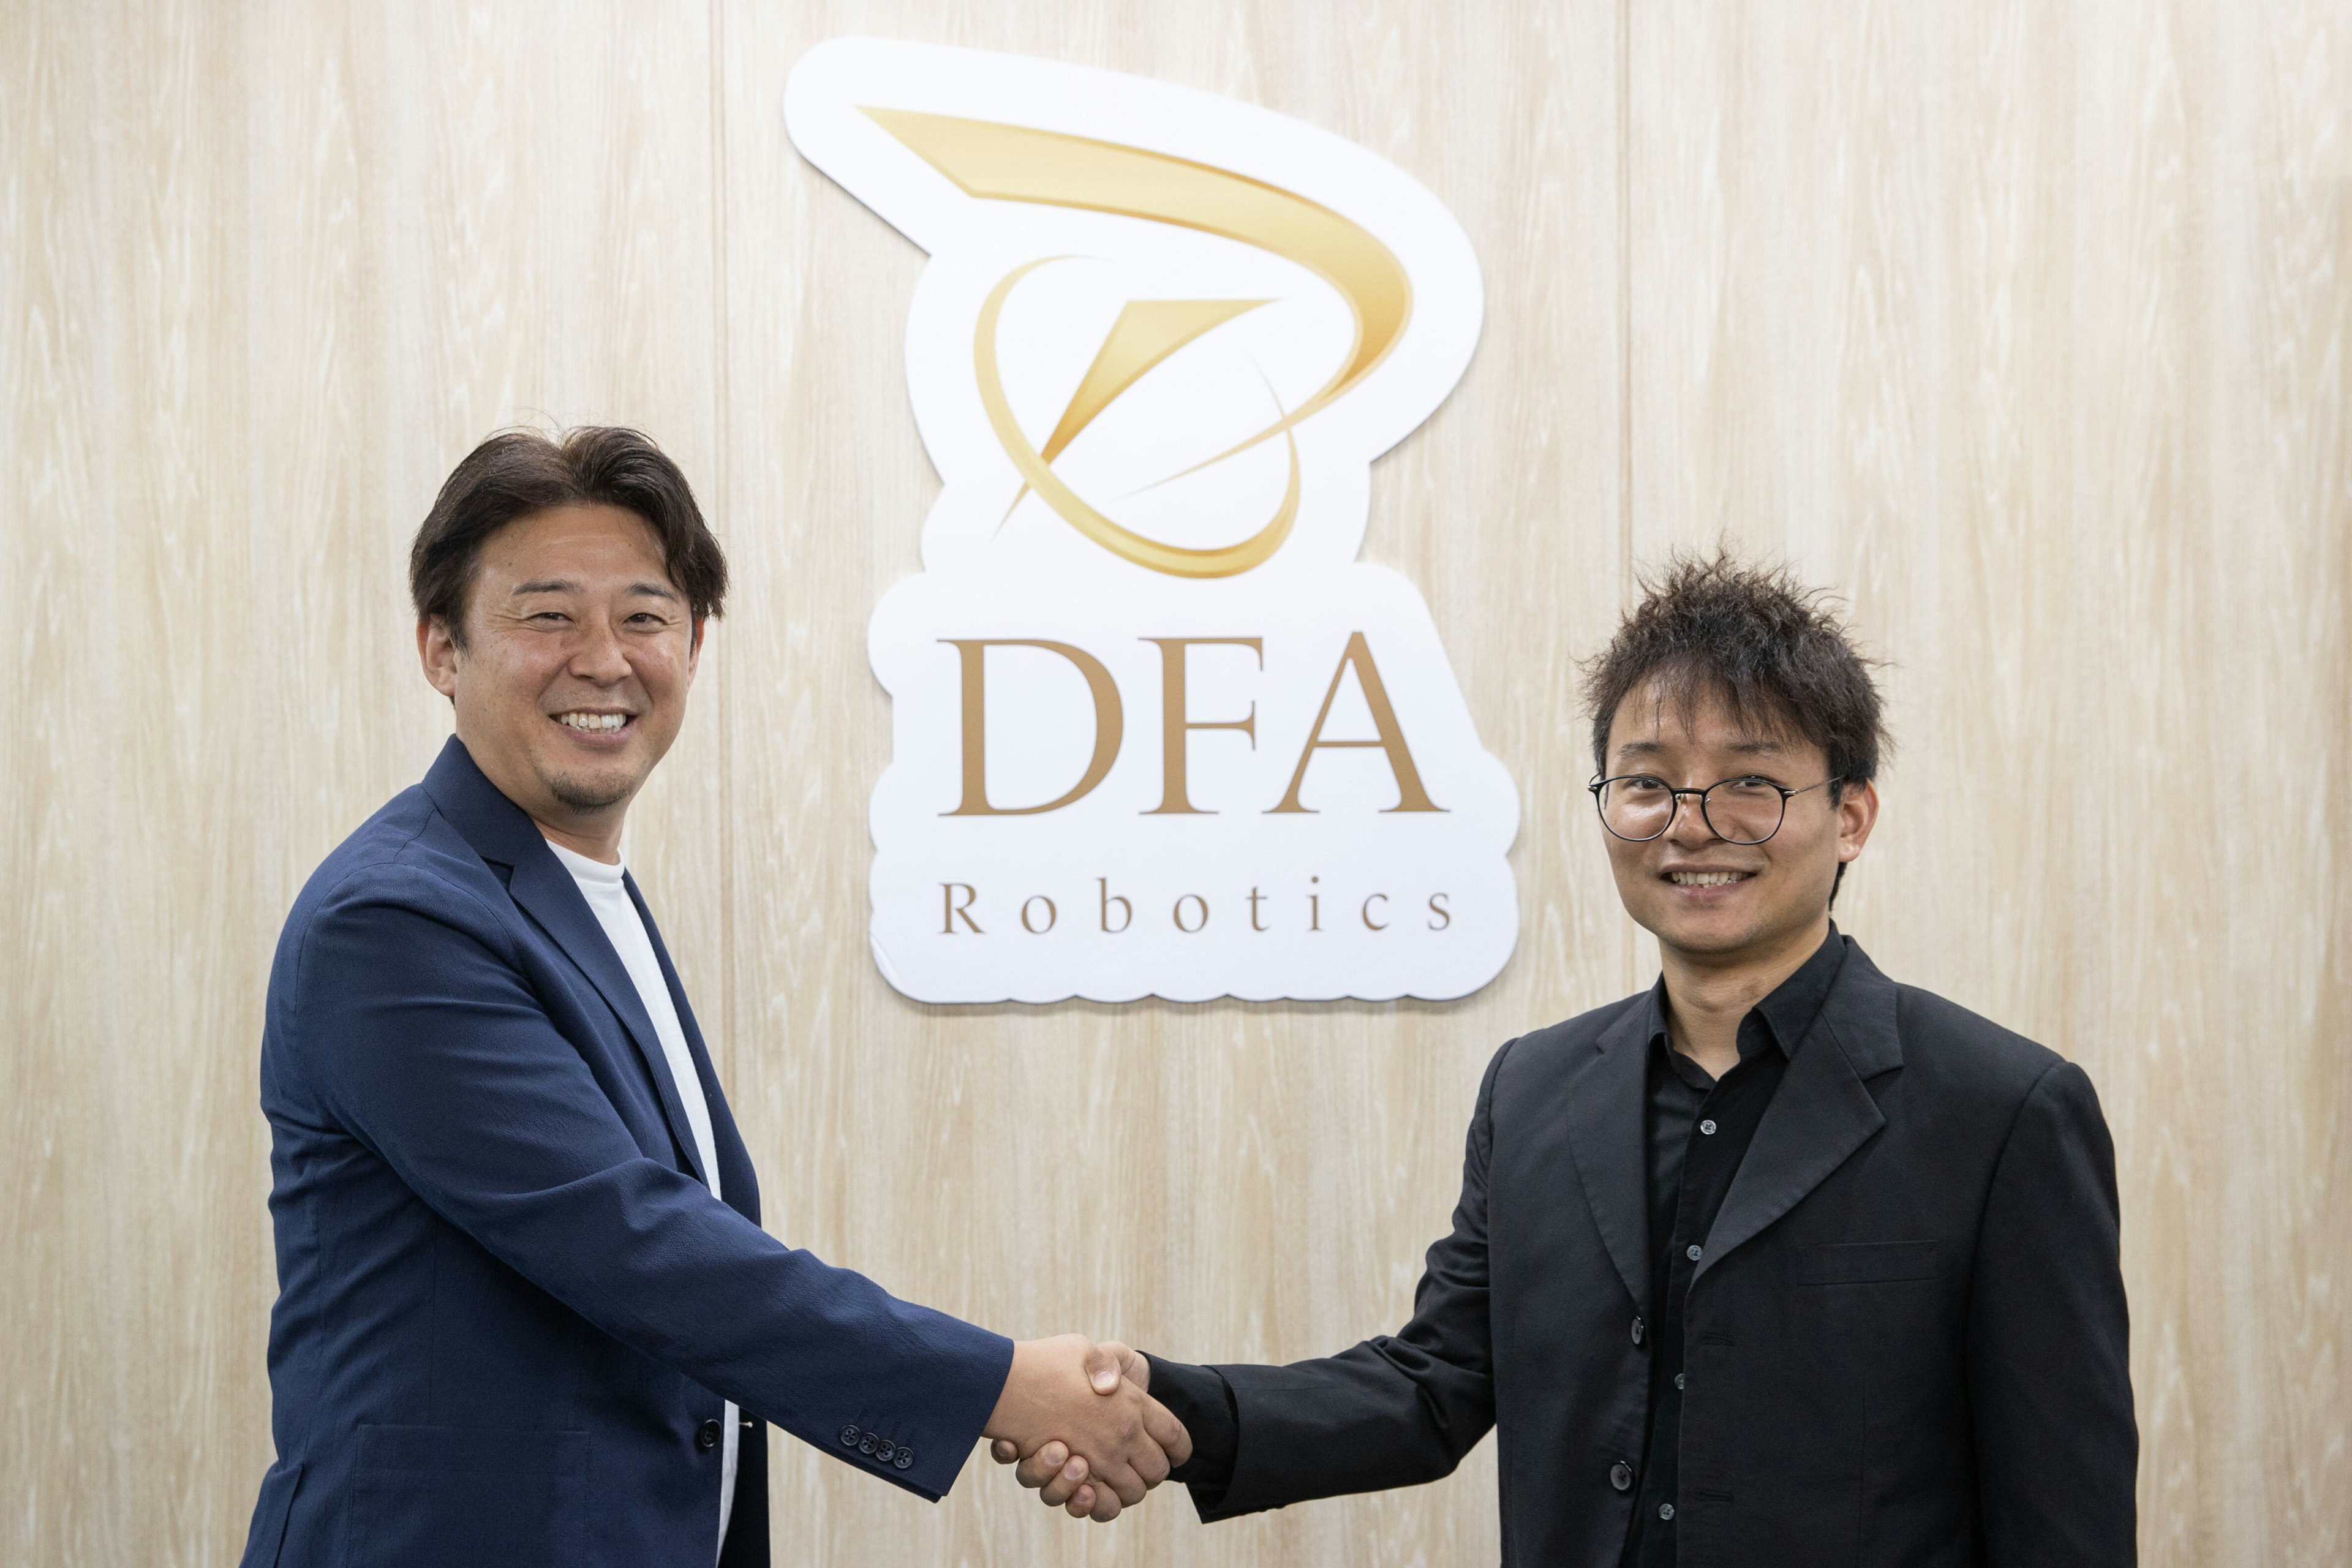 DFA Robotics、Pudu Robotics Japanと共同で、ロボットを活用した日本の飲食店オペレーションにおける最適化を目指す「おもてなしRX®プロジェクト」を始動のキービジュアル